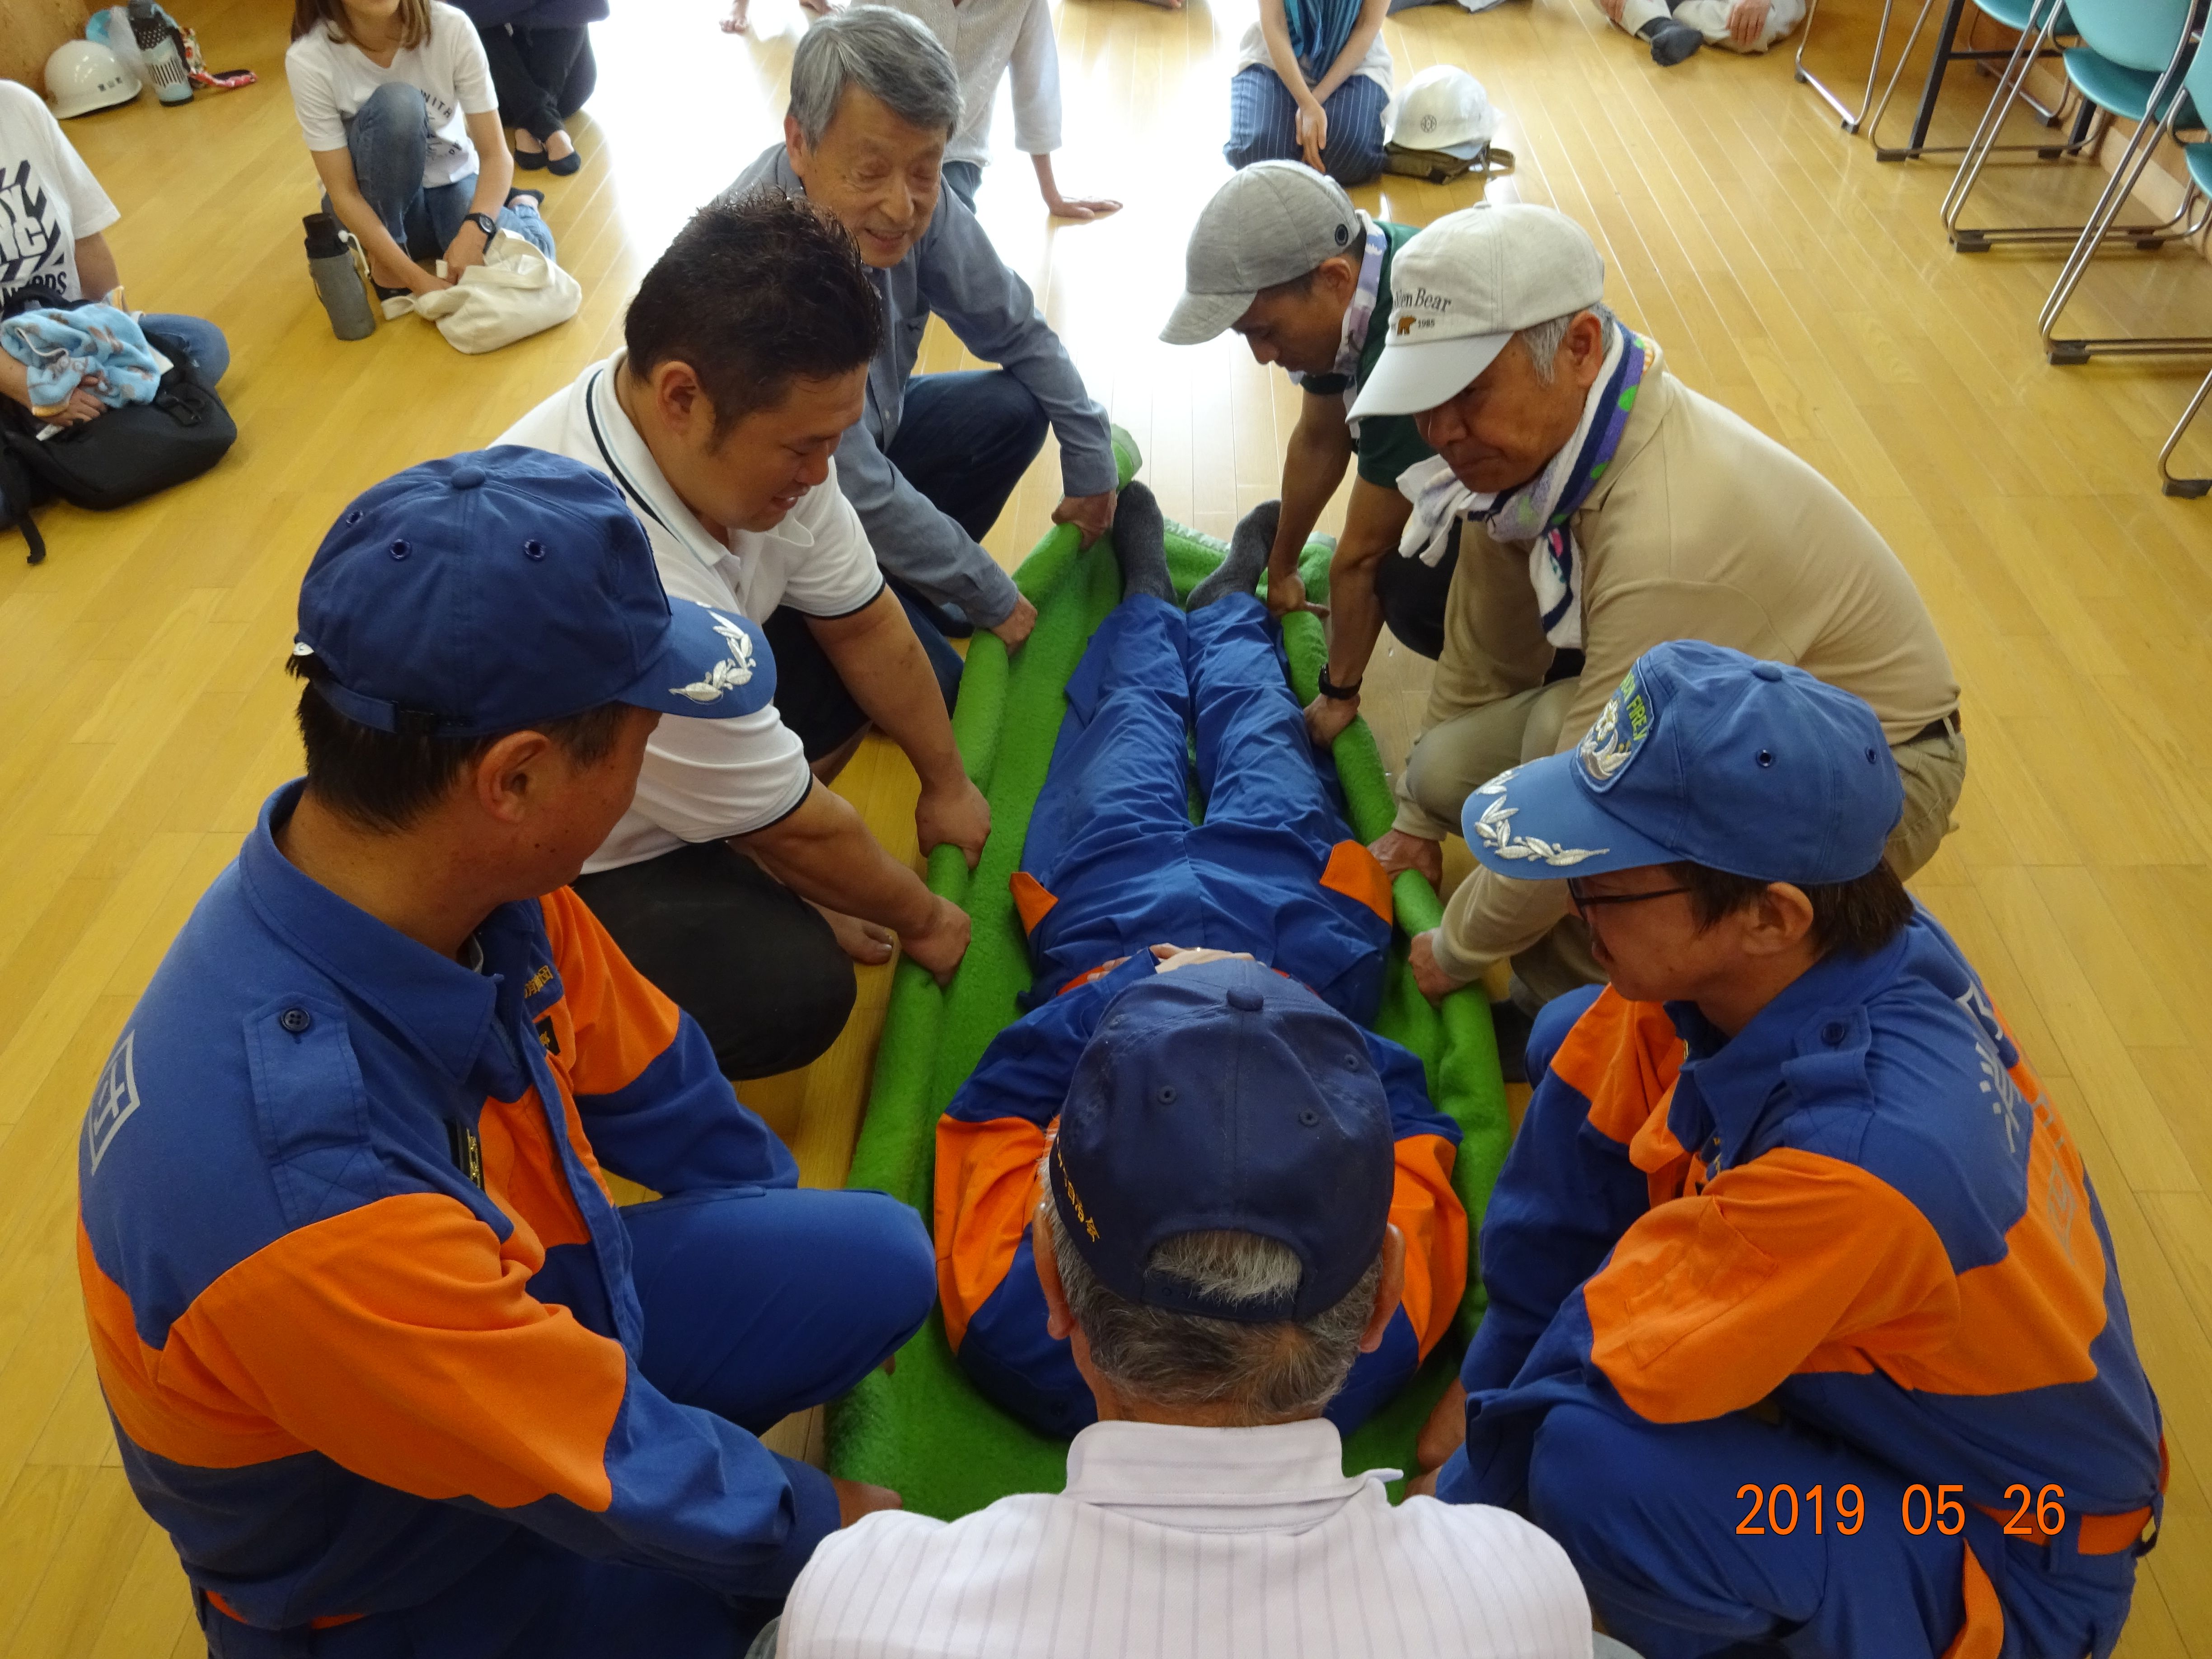 室山町防災訓練での応急救護の様子